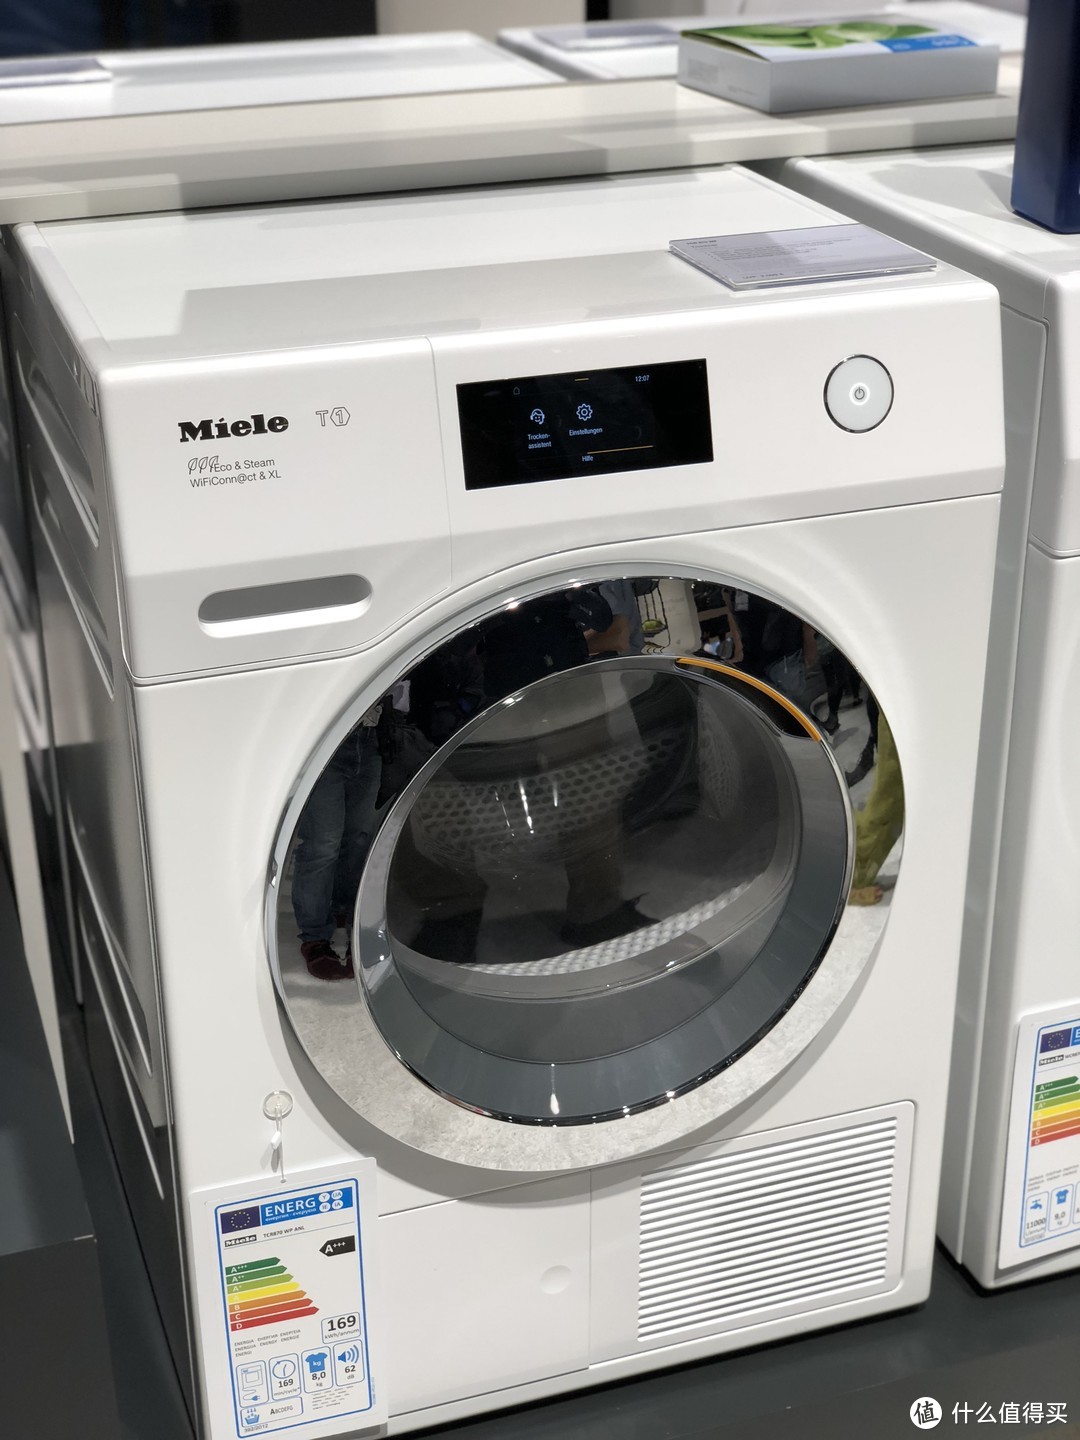 2018柏林IFA 展  Miele 洗衣机都更新了哪些黑科技